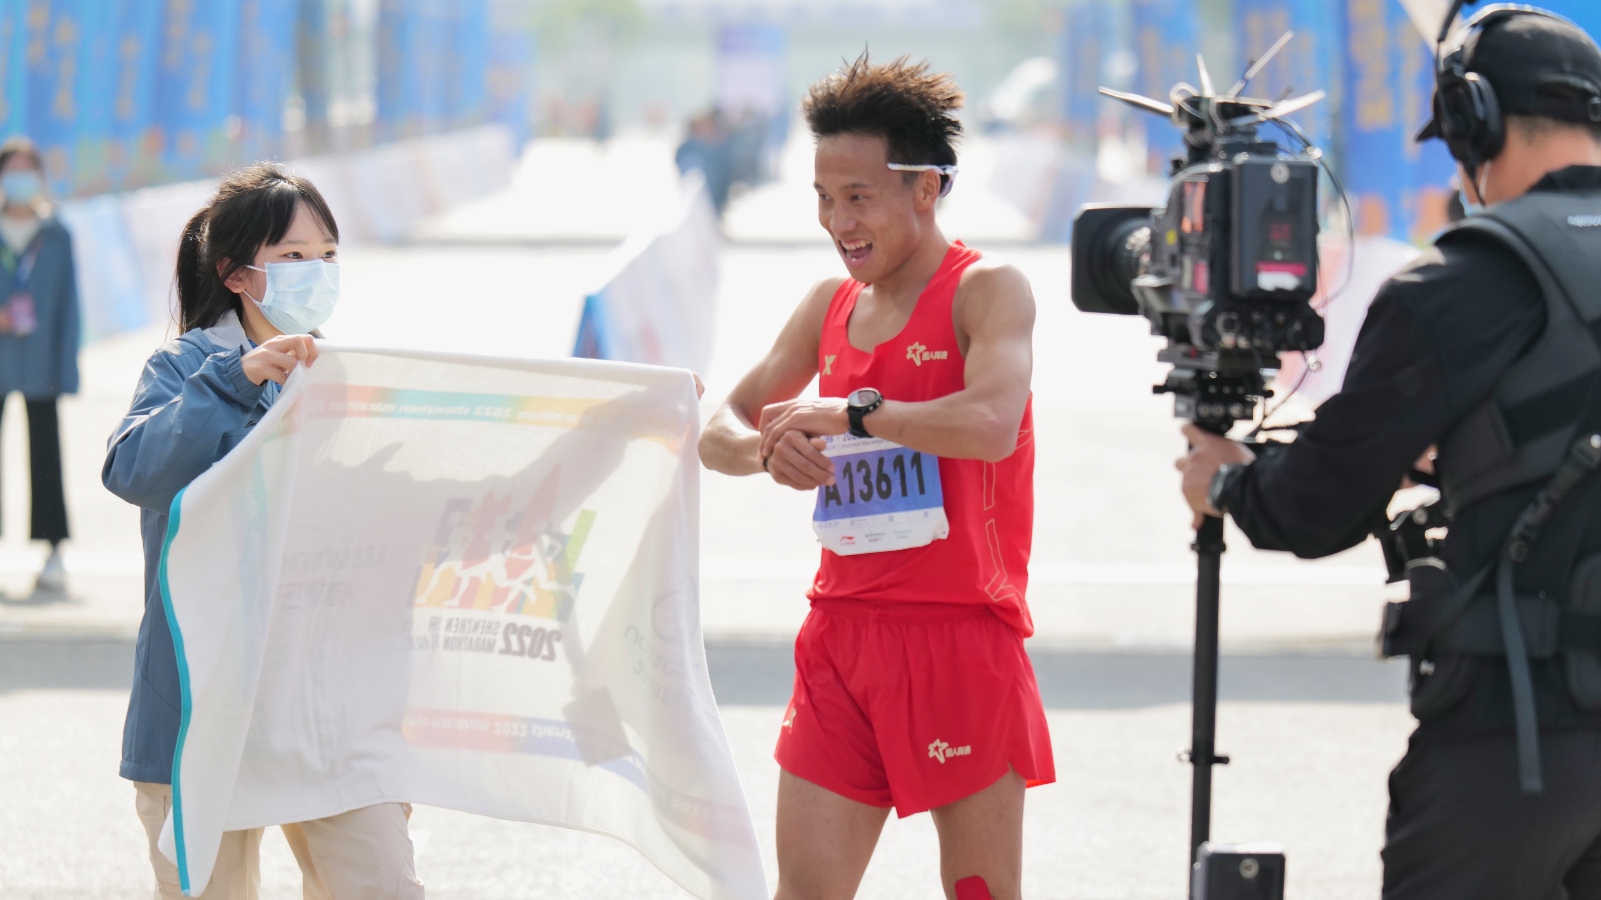 He Jie Chinese marathon runner